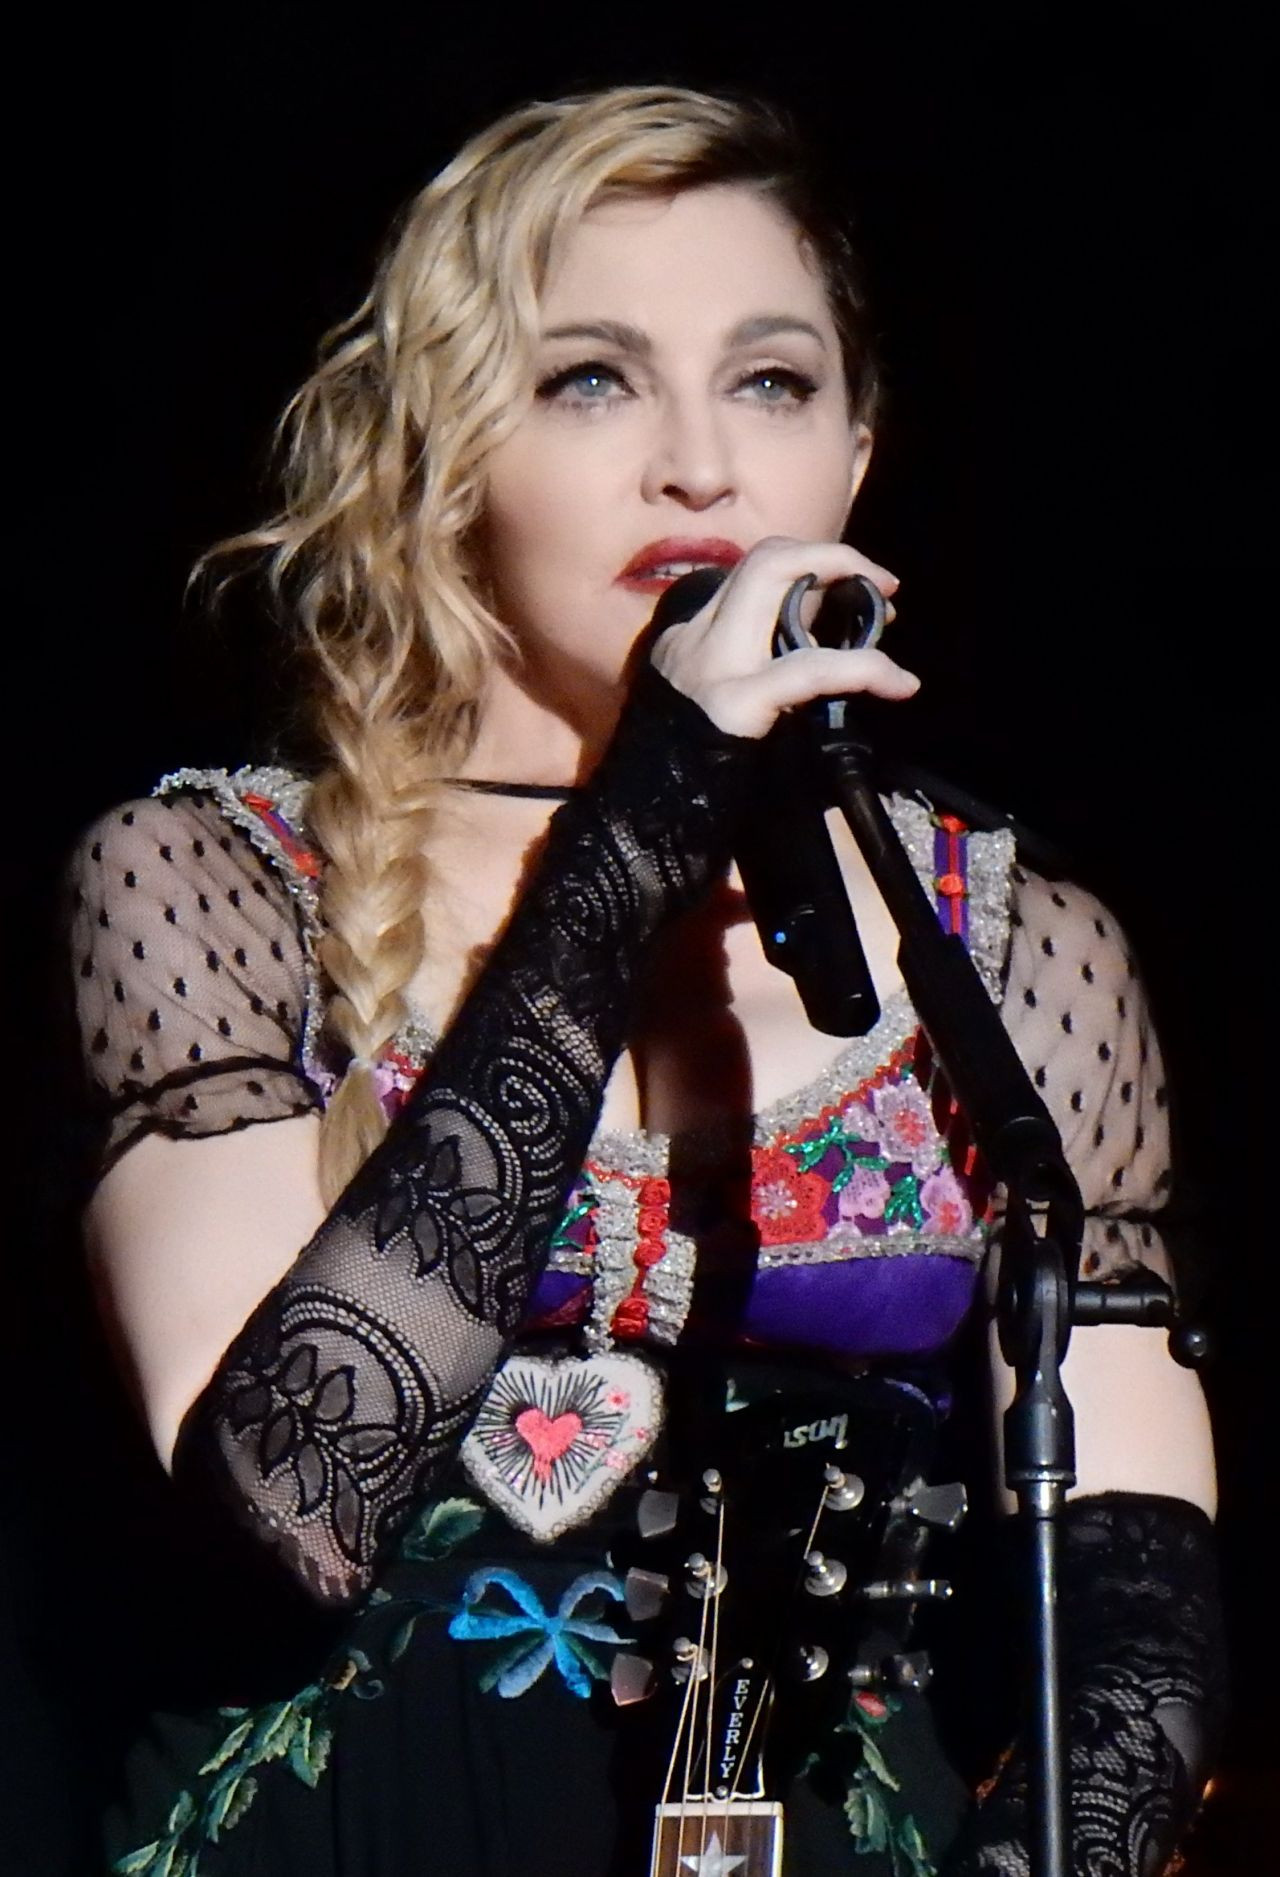 Madonna rolü için seçmeler başladı: 3 aday var - Sayfa 1